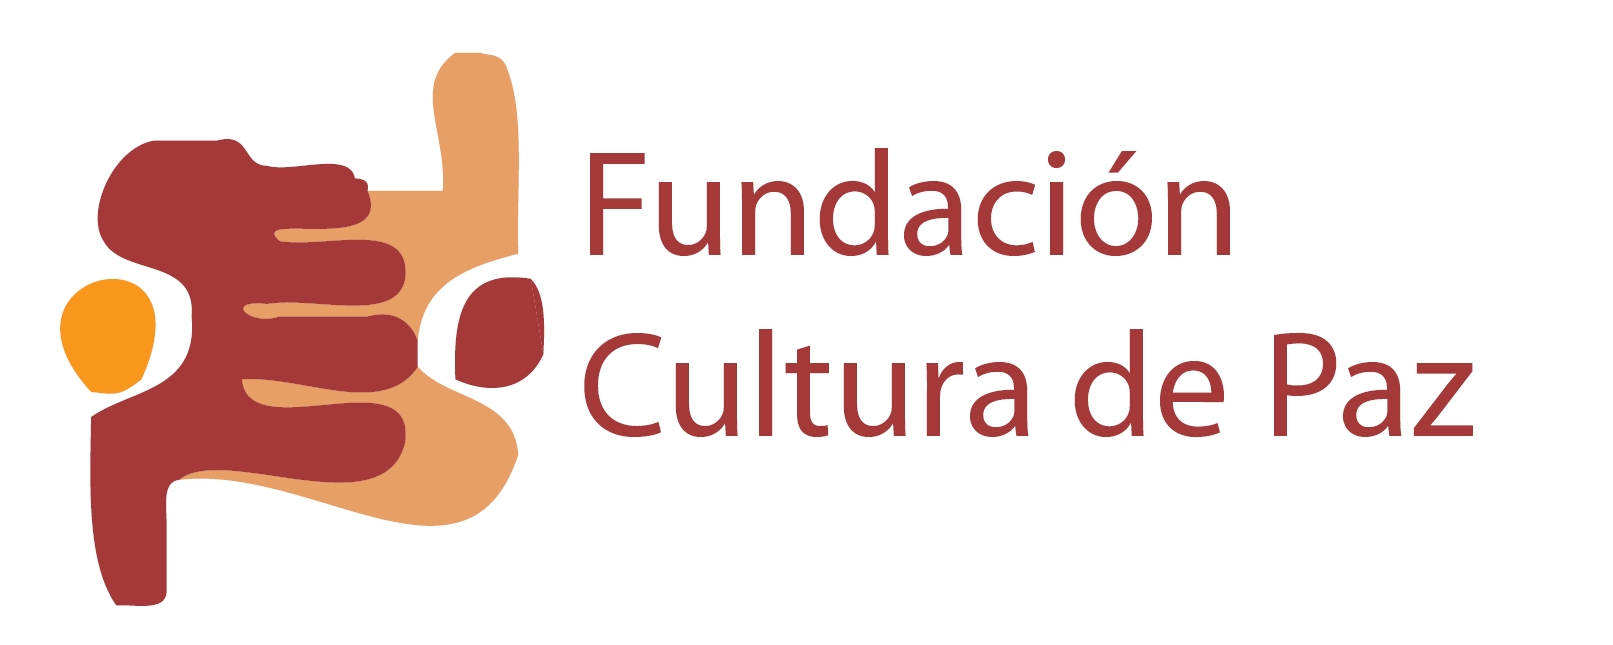 Fundacin Cultura de Paz